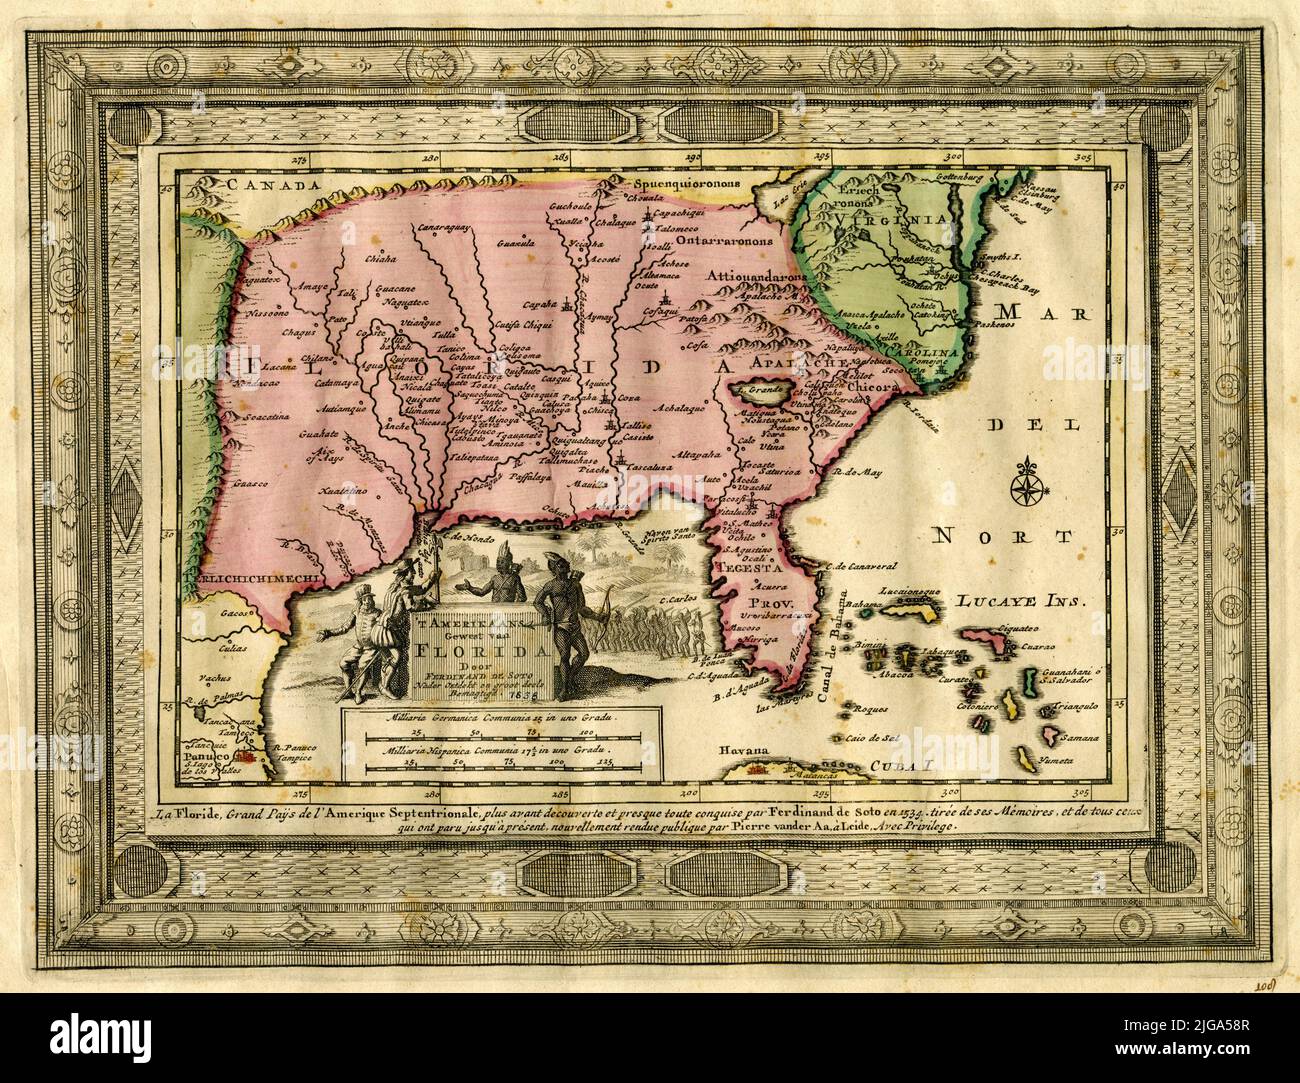 Mappa delle conquiste americane di Ferdinand DeSoto, tratte dalle sue memorie, 1638, da Pieter van der AA. Lingue olandese e francese Foto Stock